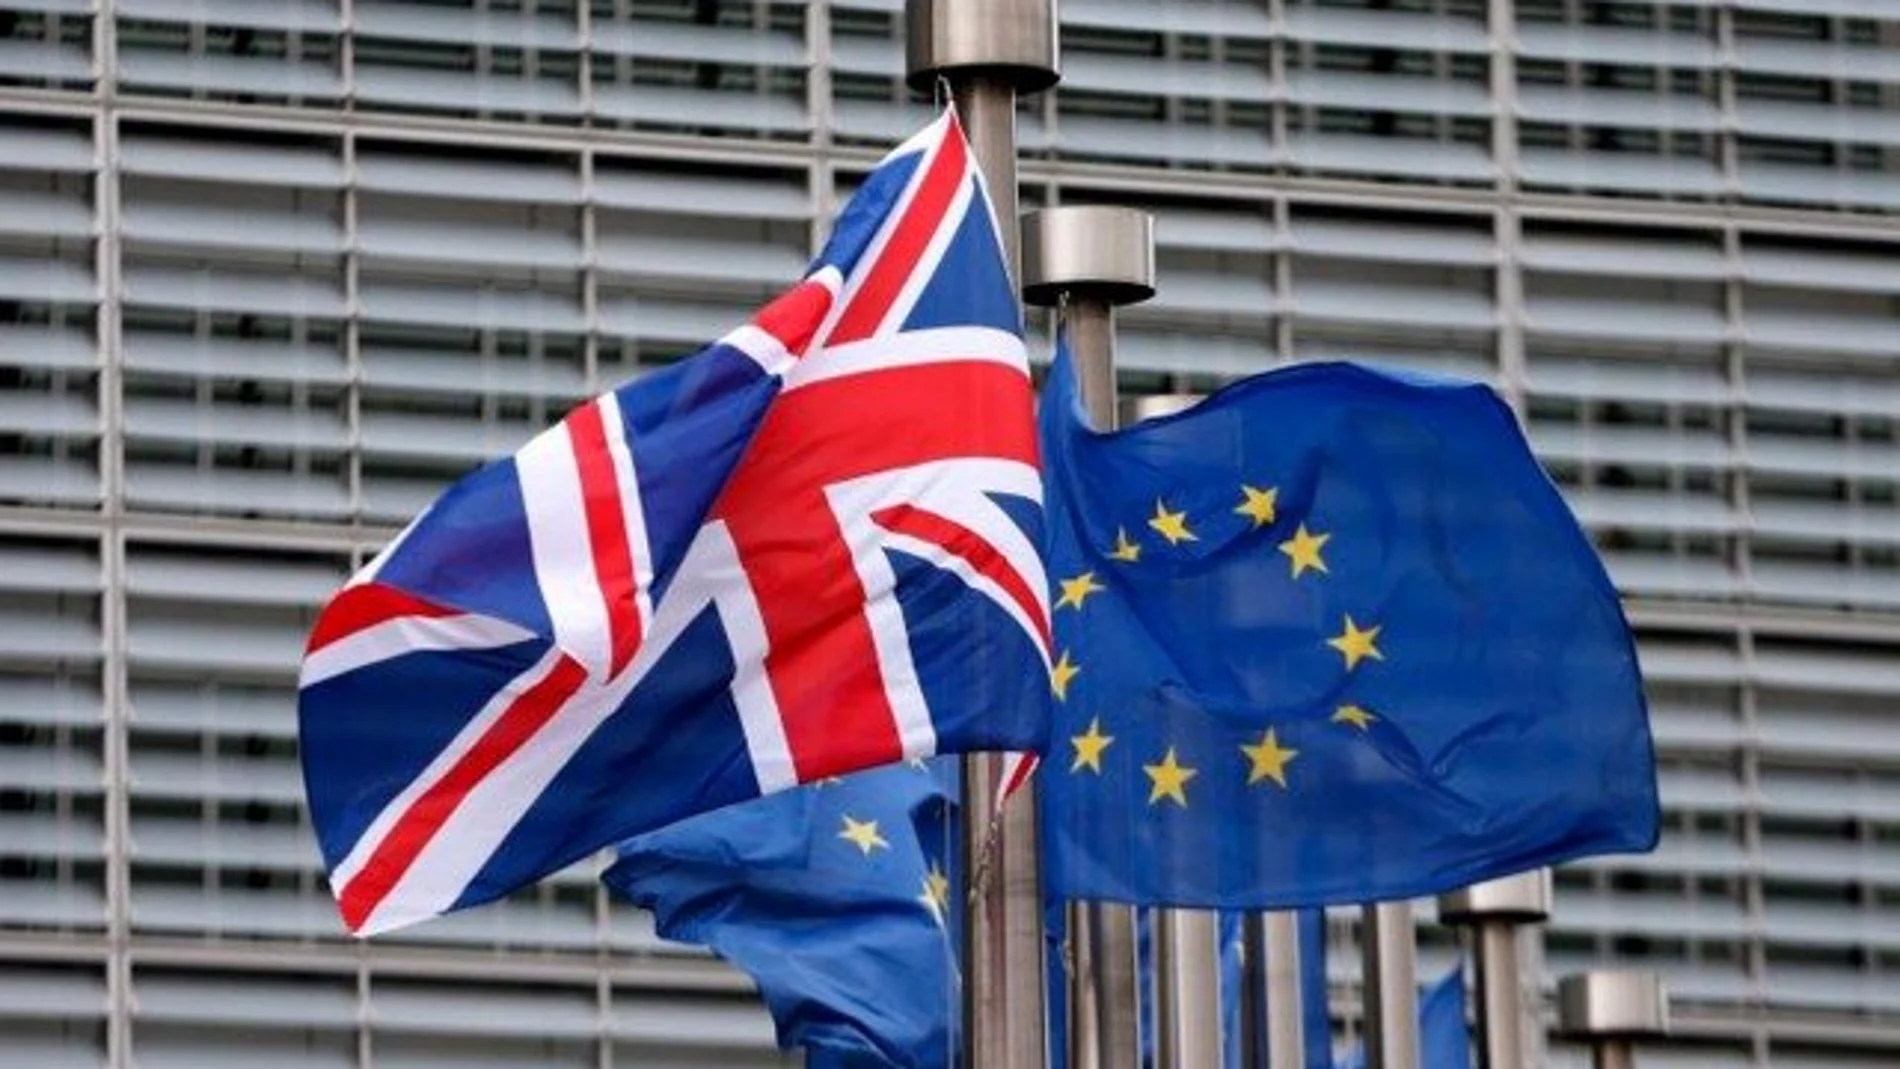 Banderas de Reino Unido y de la Unión Europea